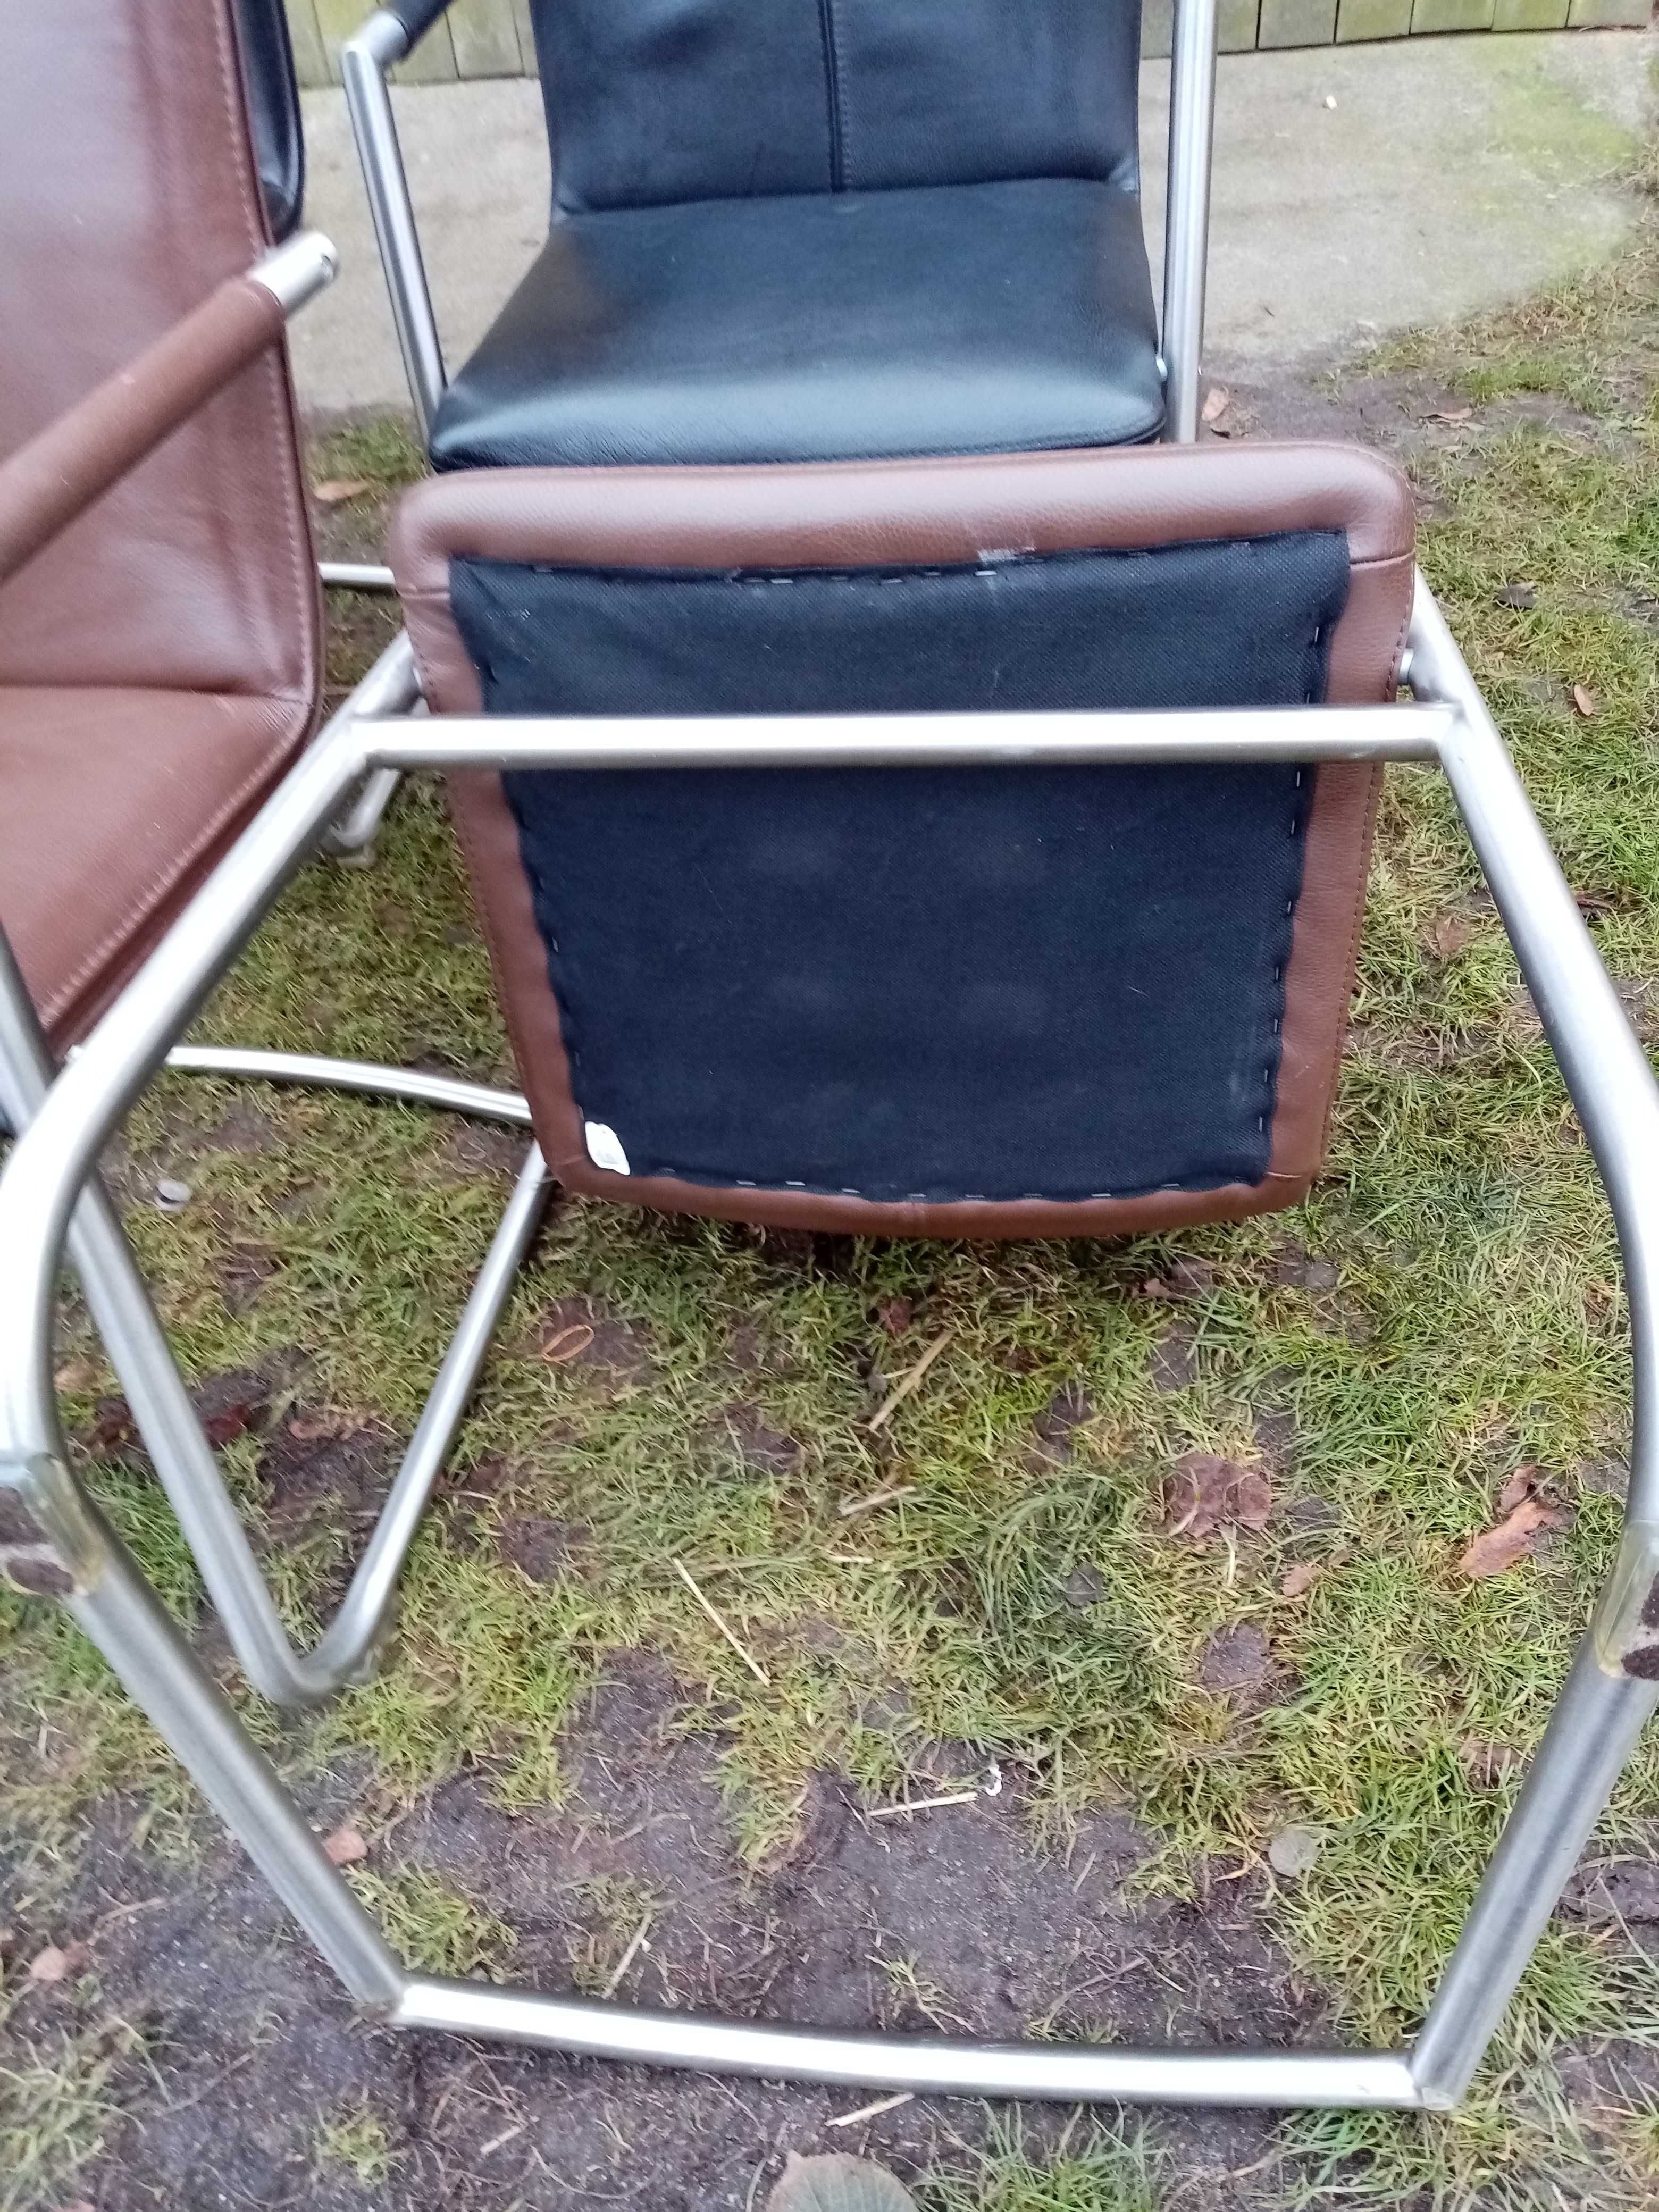 Krzesła w stylu Bauhaus